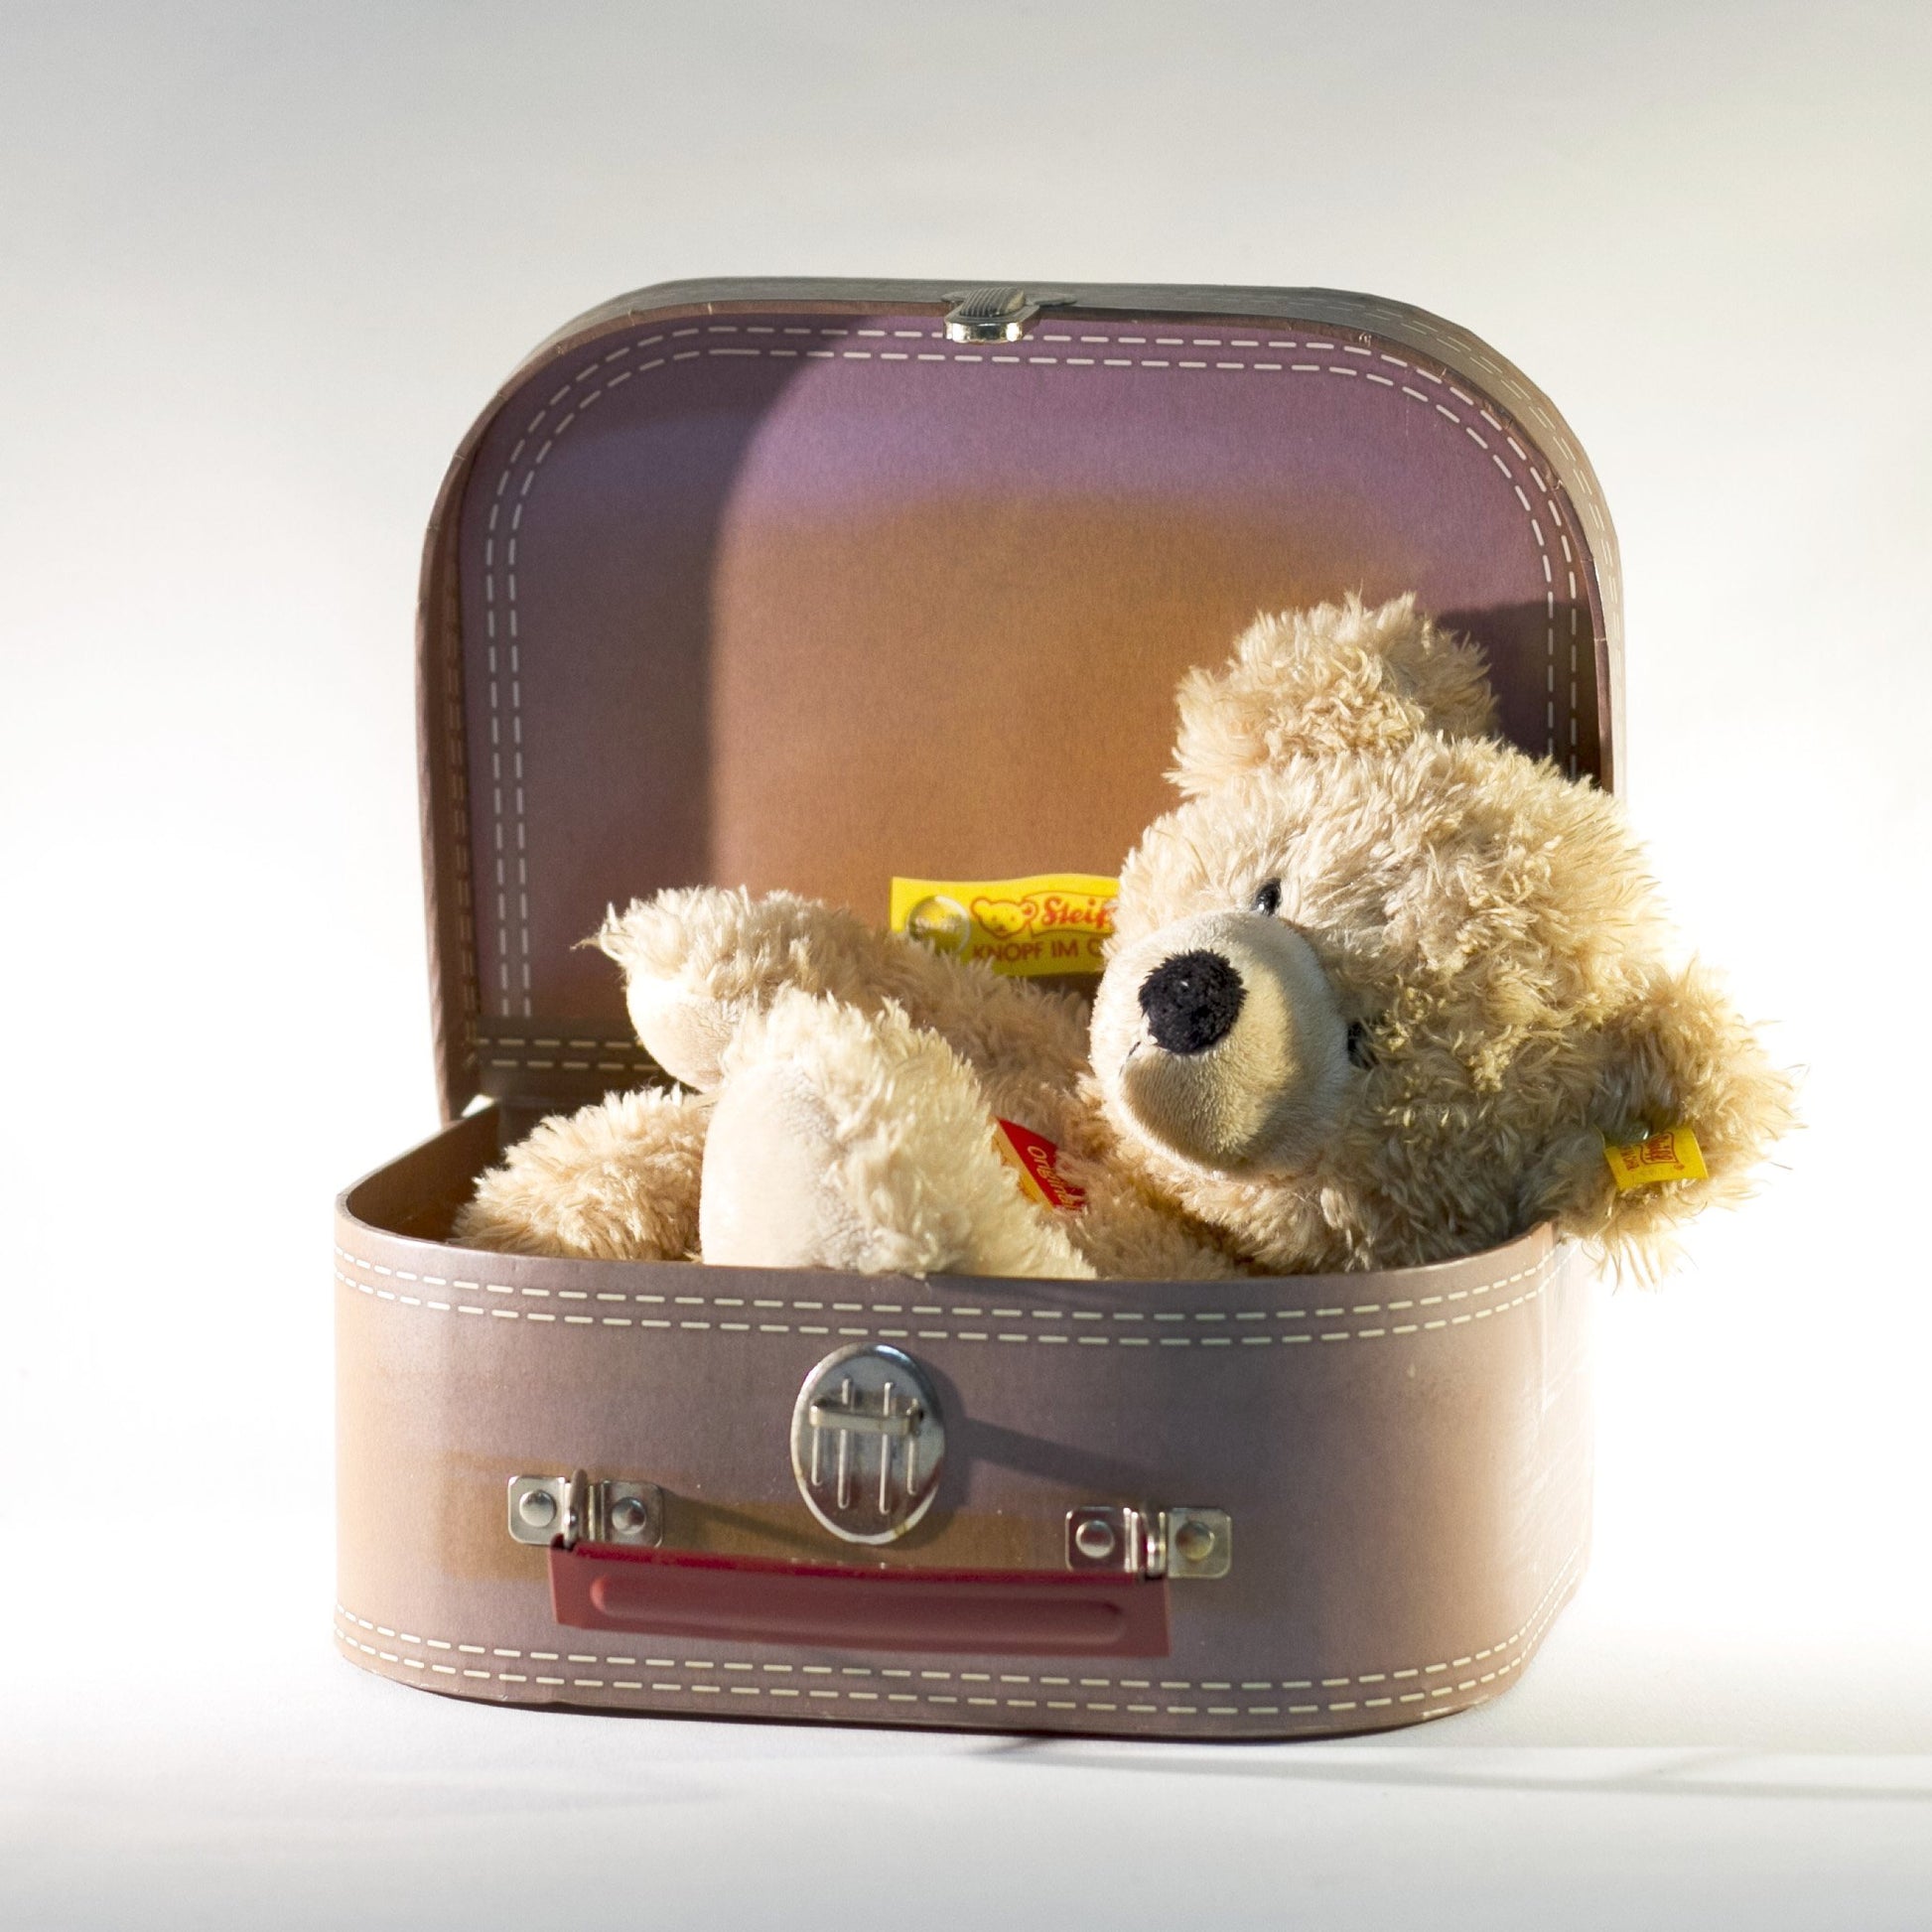 Steiff Fynn Teddy Bear in Suitcase Beige